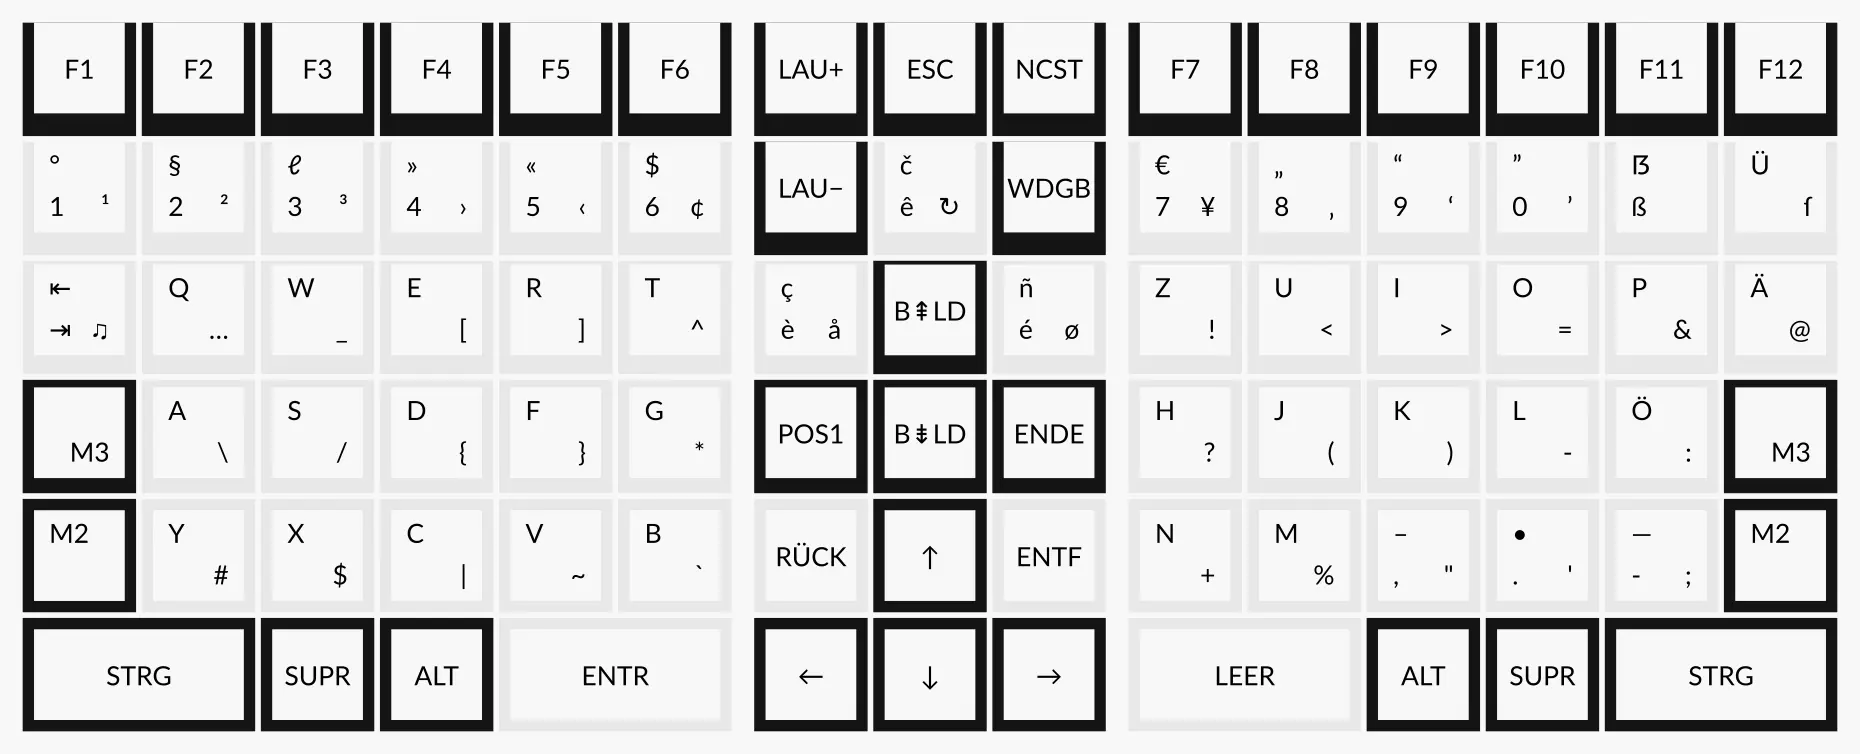 Modell der Columna Tastatur mit Beschriftung für drei Ebenen des NeoQwertz Layouts.